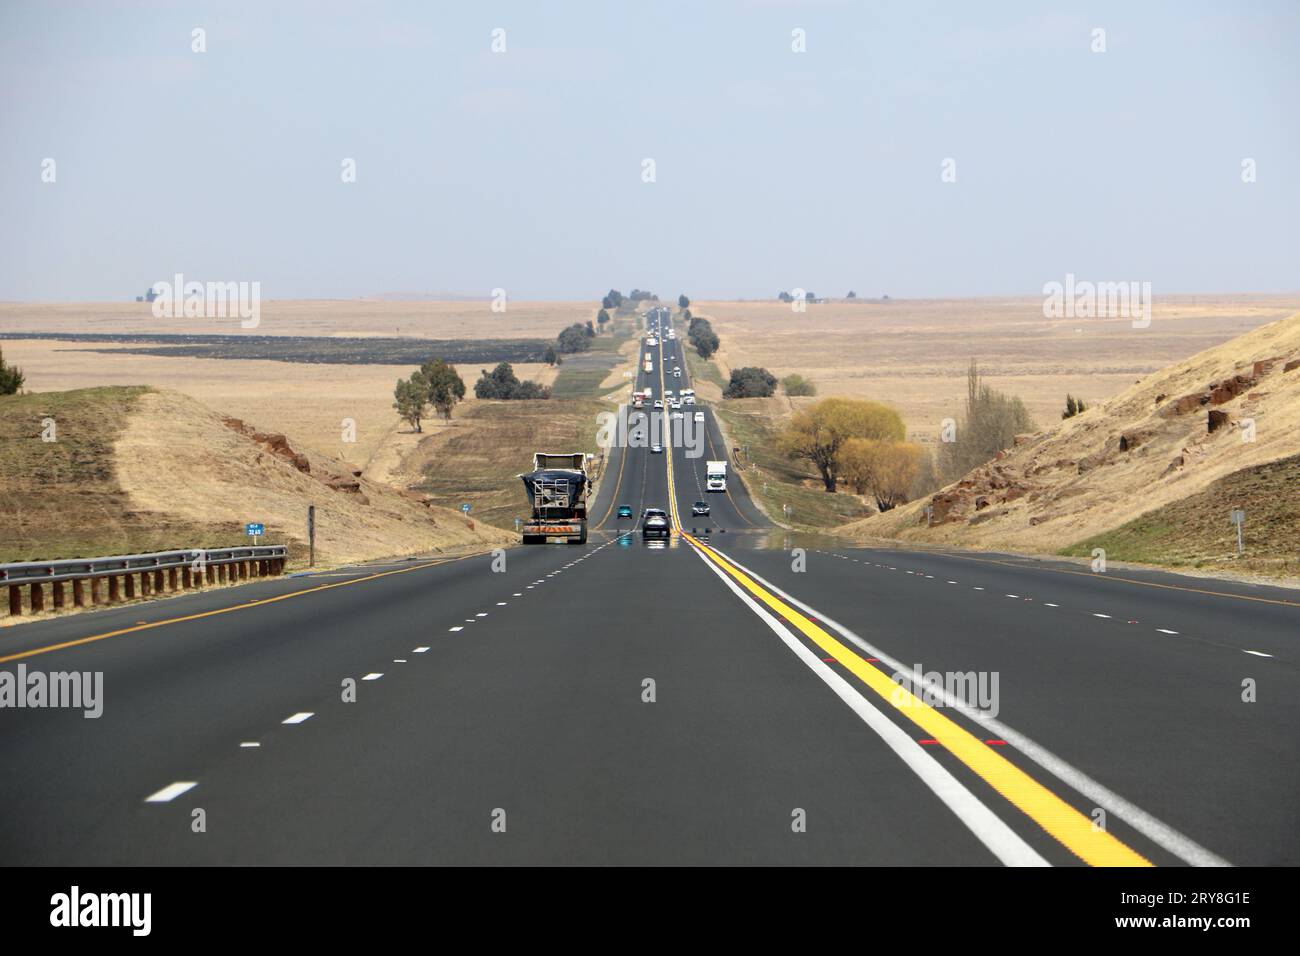 Die Autobahn N3 zwischen Durban und Johannesburg aus Sicht der Fahrer, die Autobahn bis zum Horizont mit Autos und Lkws und trockener Landschaft Stockfoto